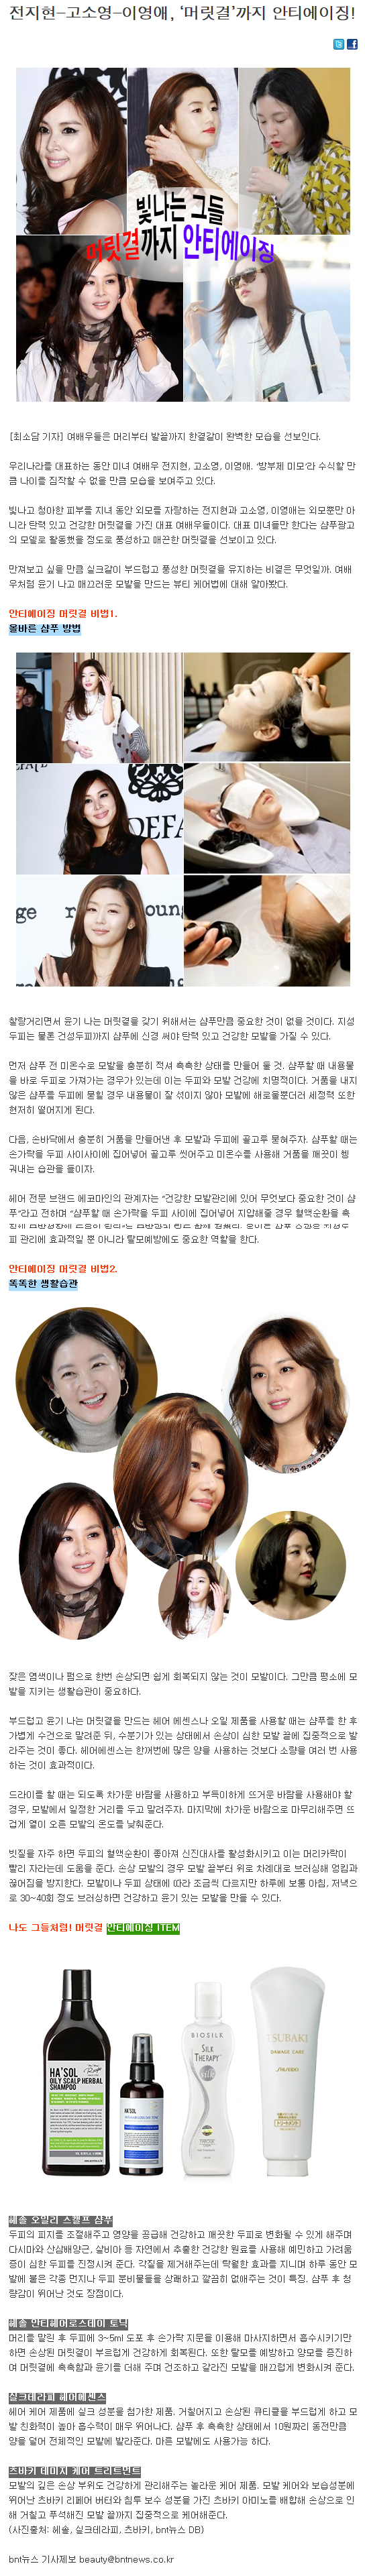 [bnt뉴스-2014.05.16] 전지현-고소영-이영애, ‘머릿결’까지 안티에이징!